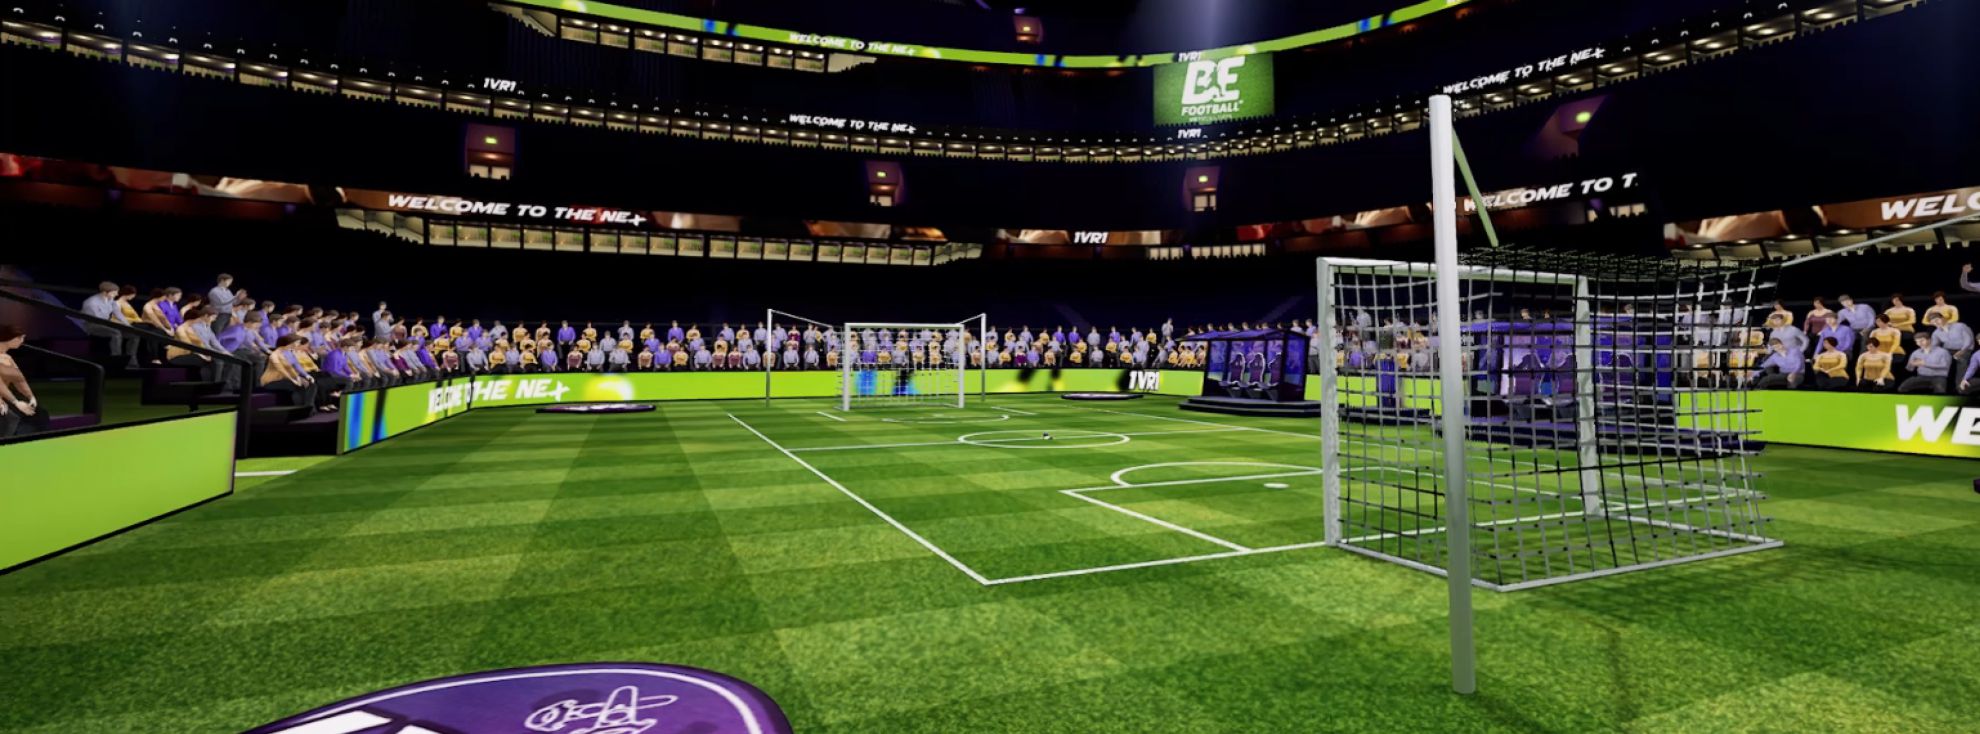 La Realidad Virtual, otra nueva tecnología al servicio del futbol